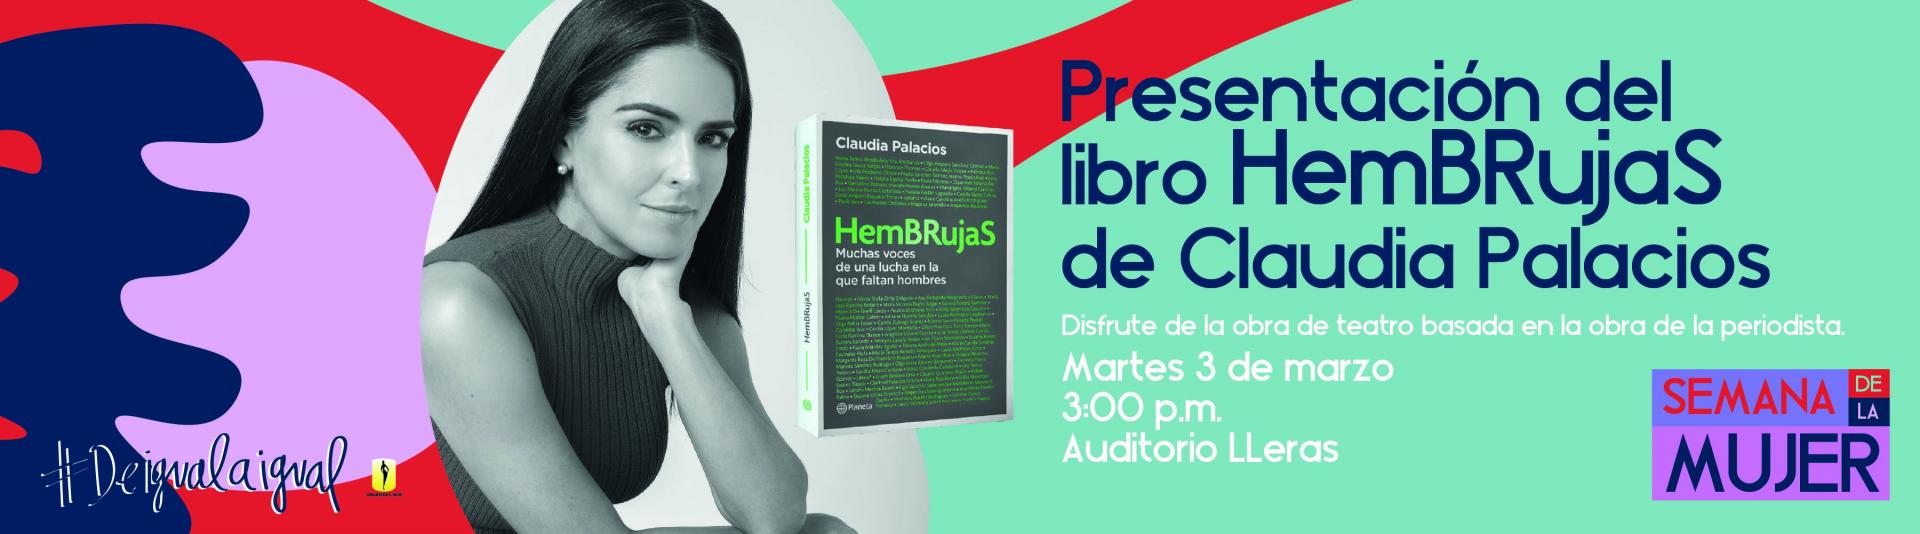 Presentación del libro HemBRujas de Claudia Palacios